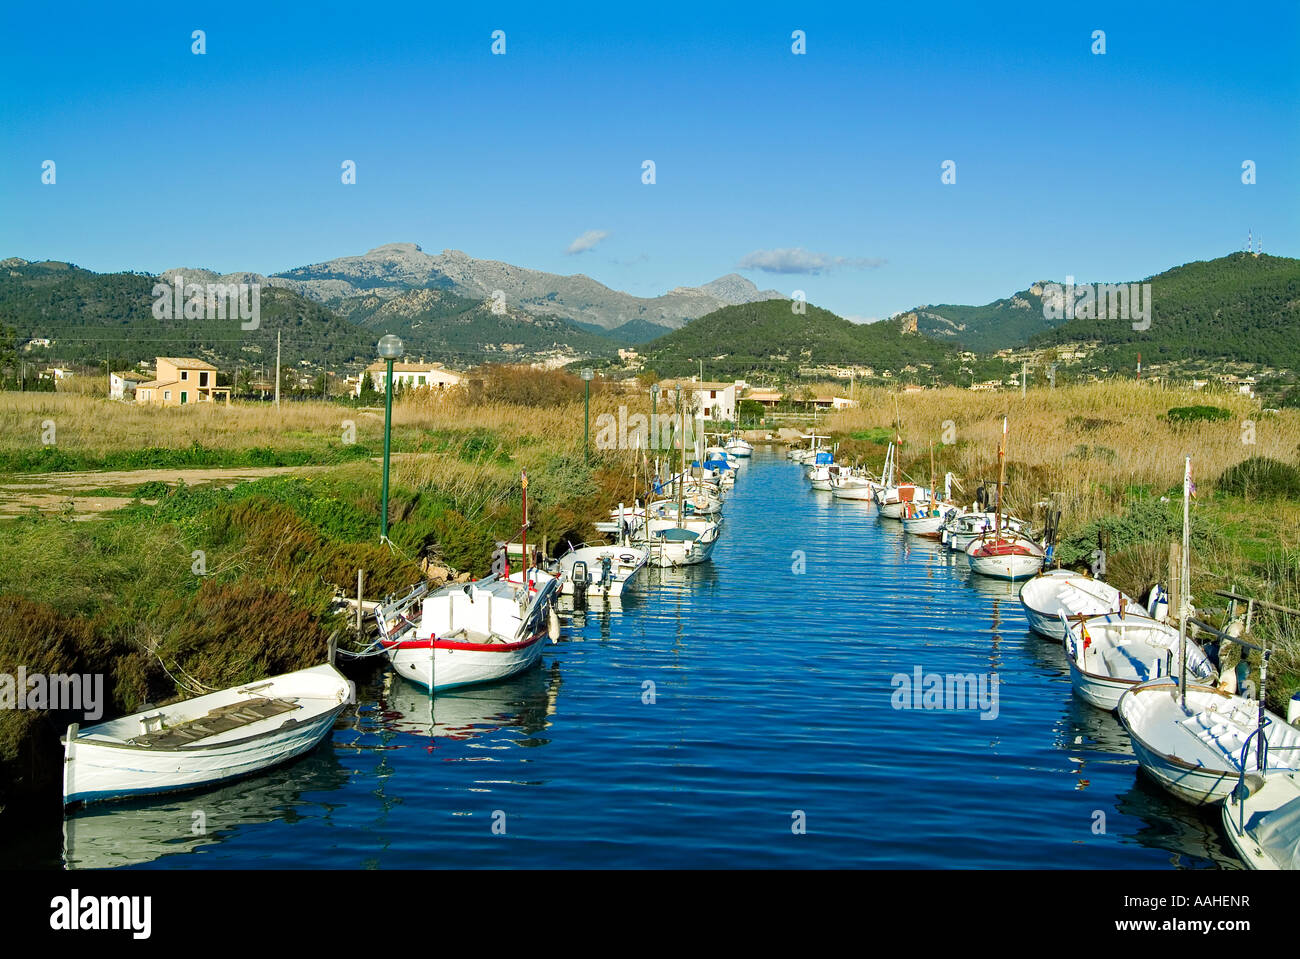 Es Saluet torrent.Port de Andratx.Mallorca Island.Spain Stock Photo